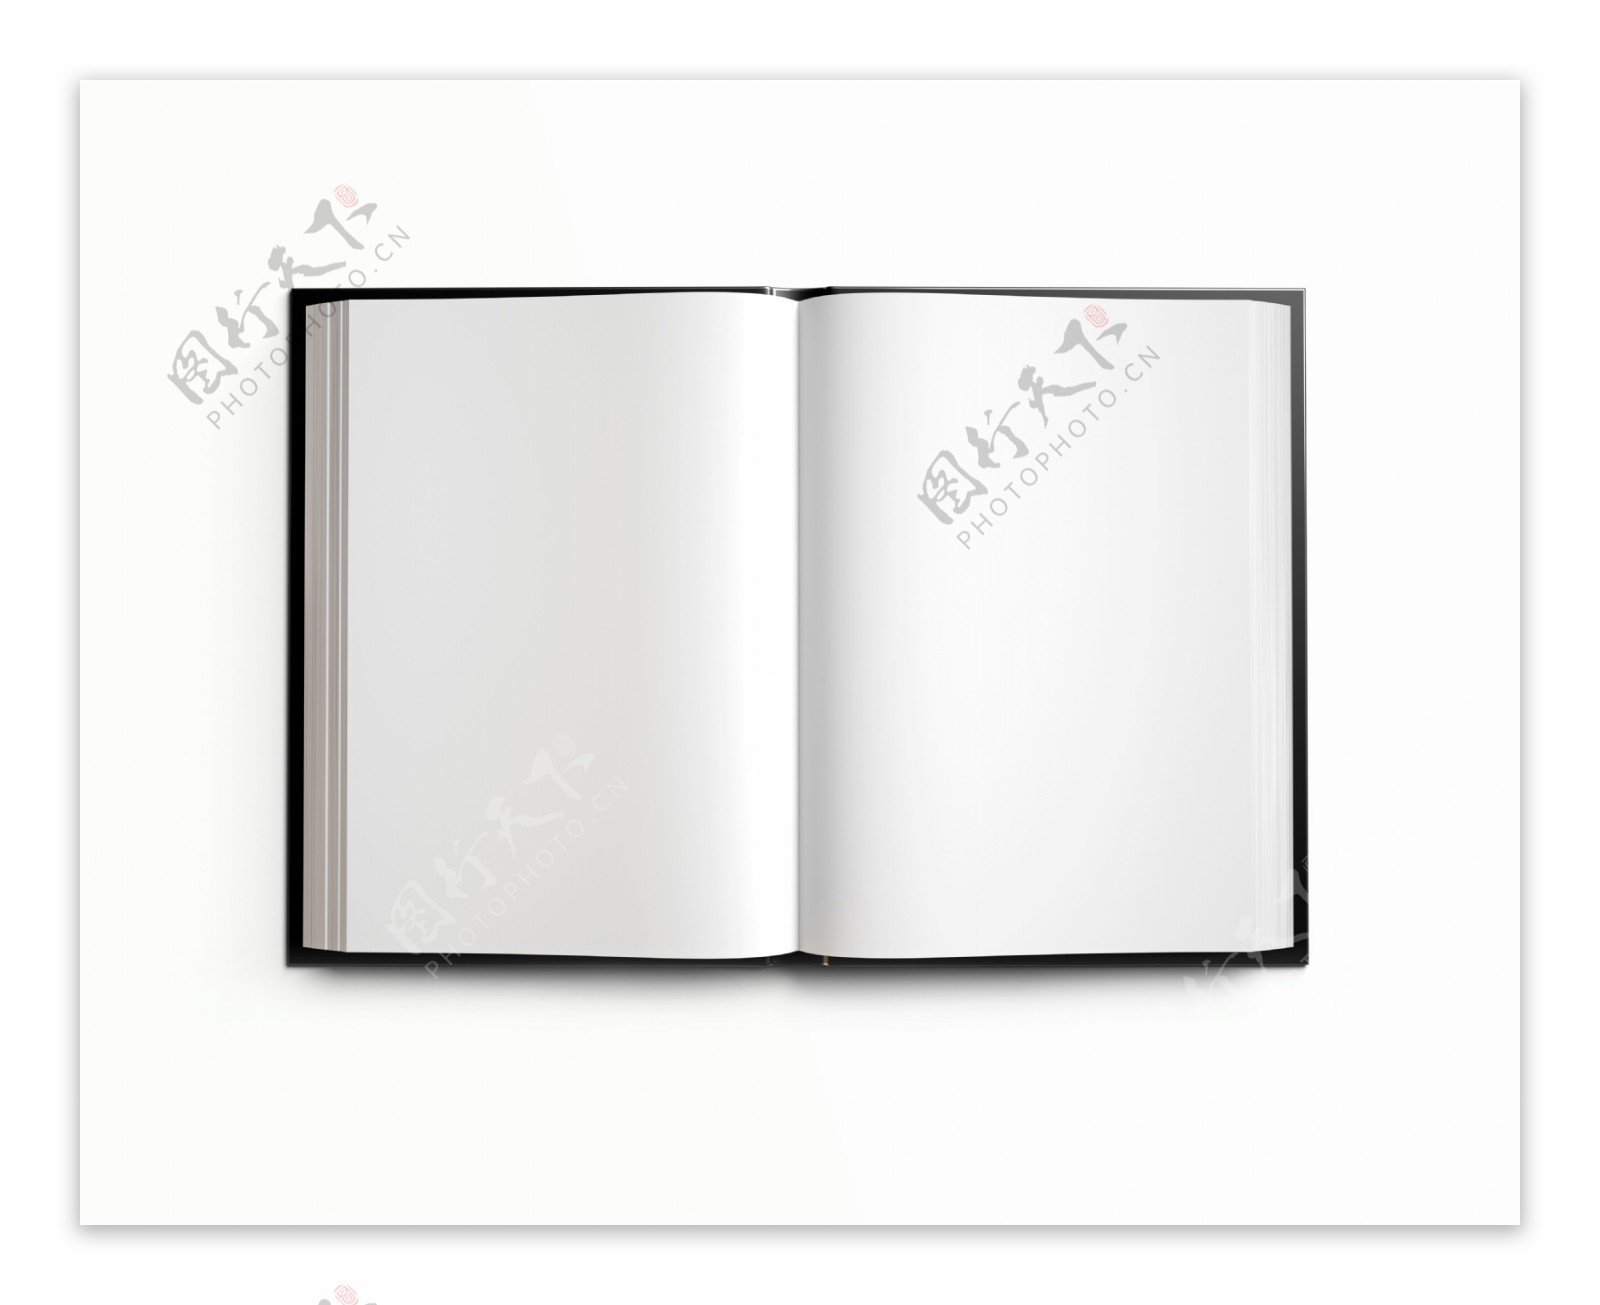 一本厚的空白册子图片